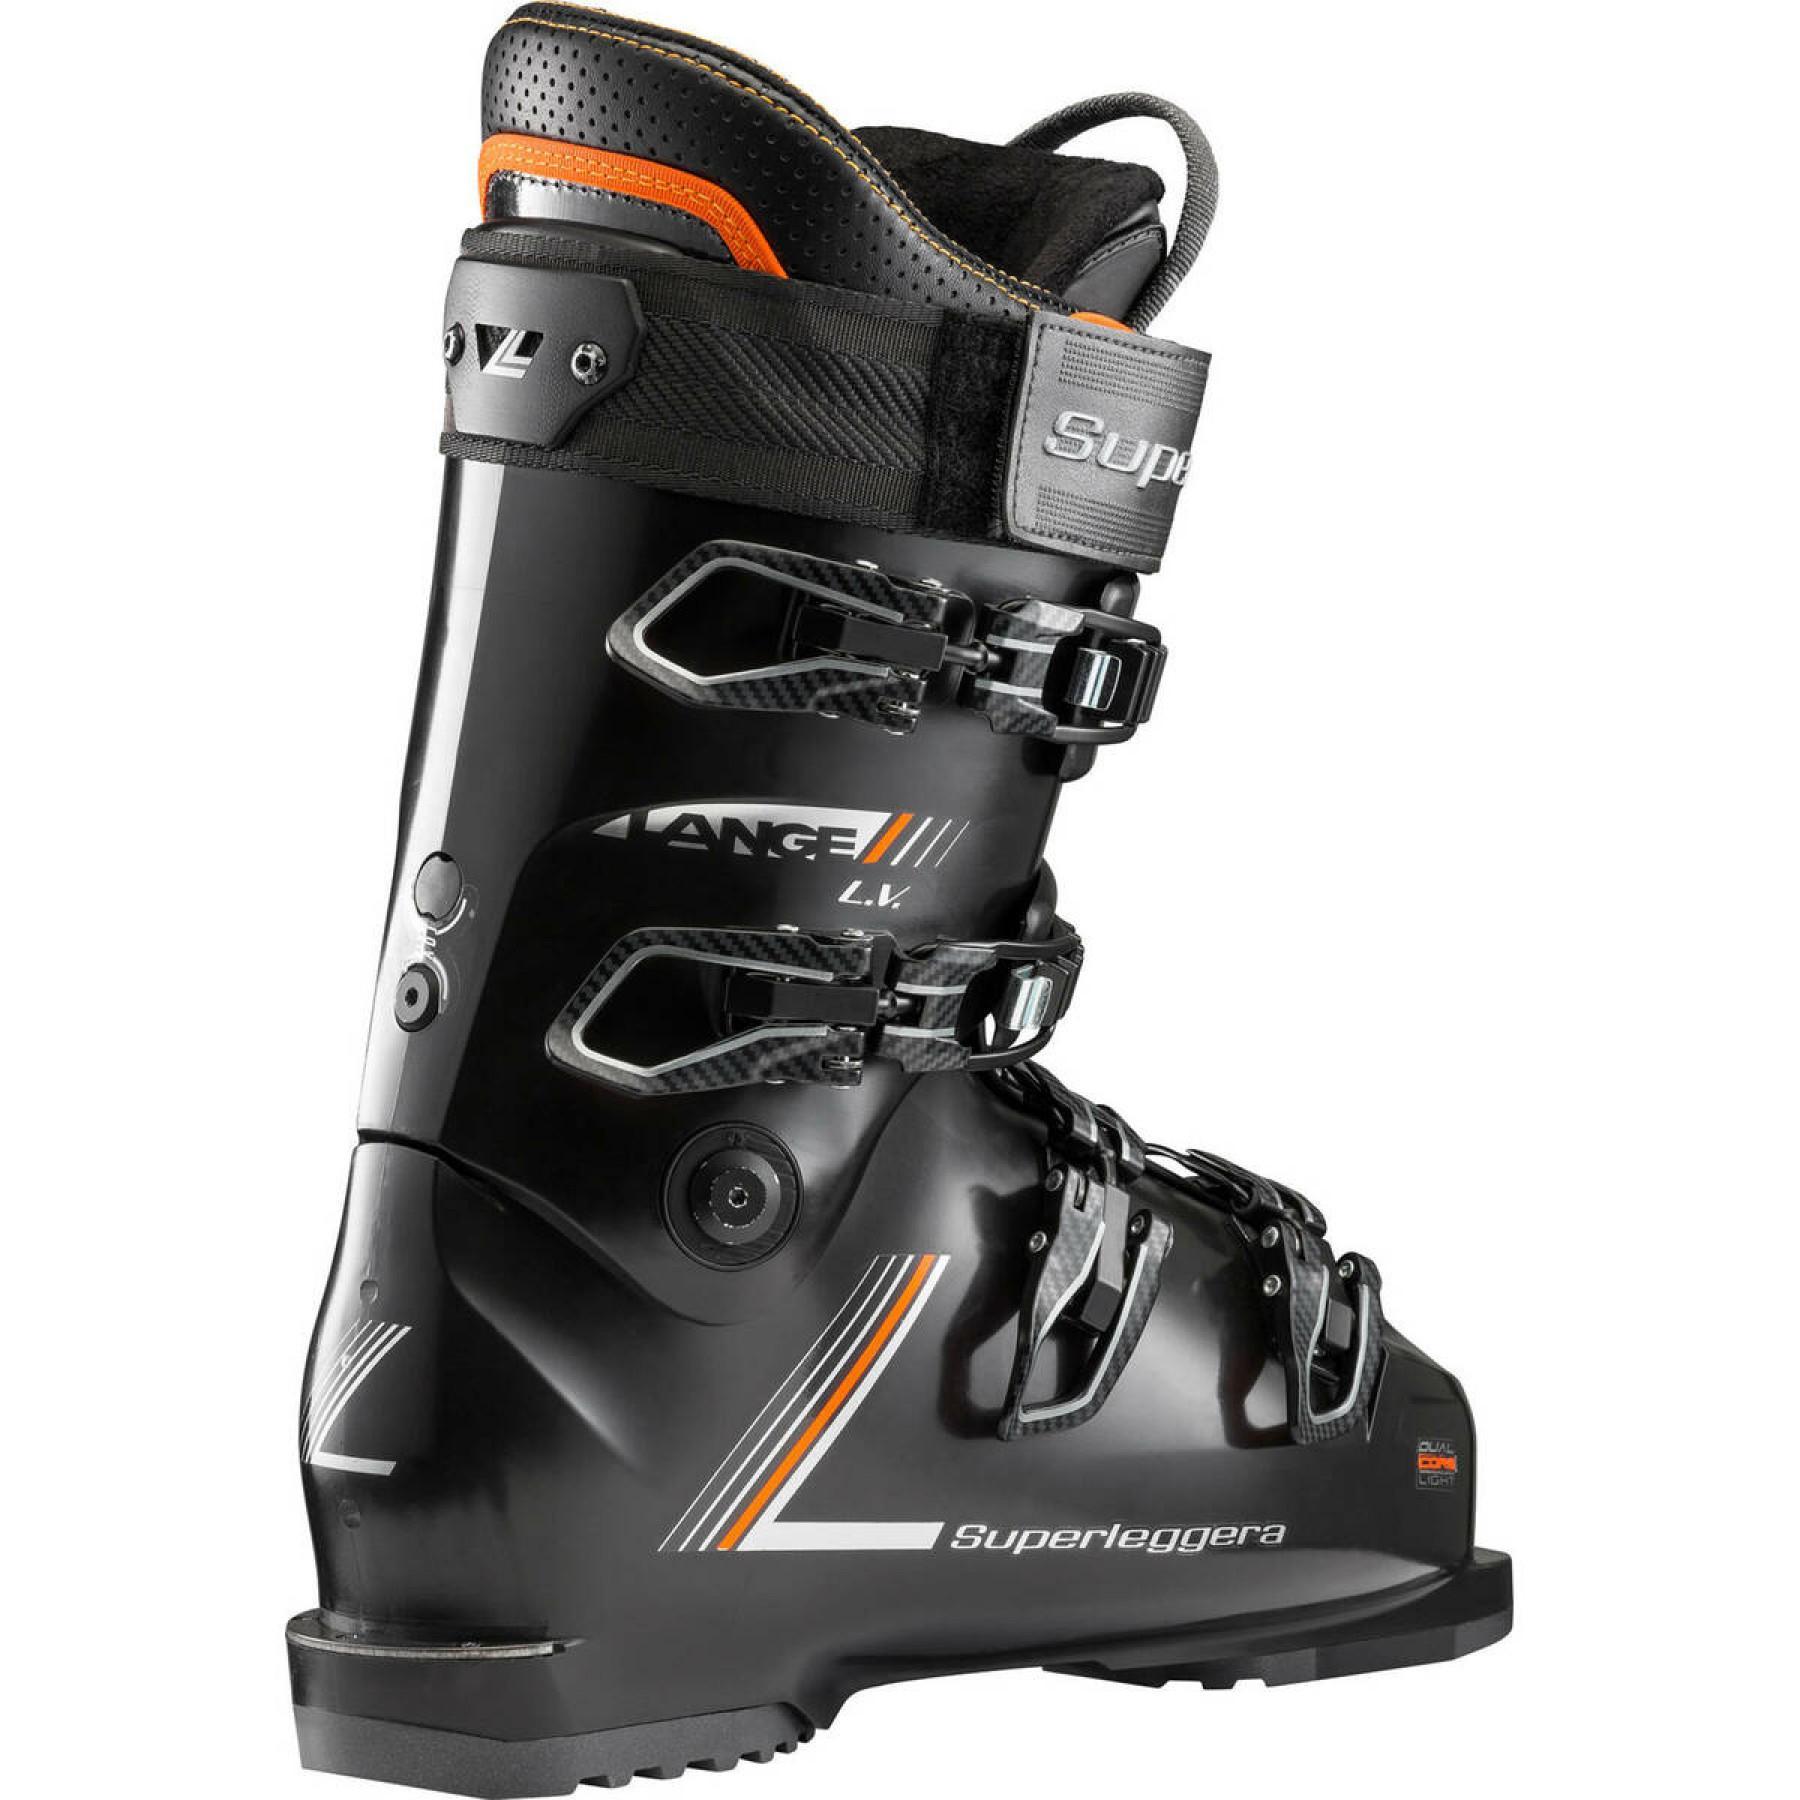 Ski boots Lange rx superleggera